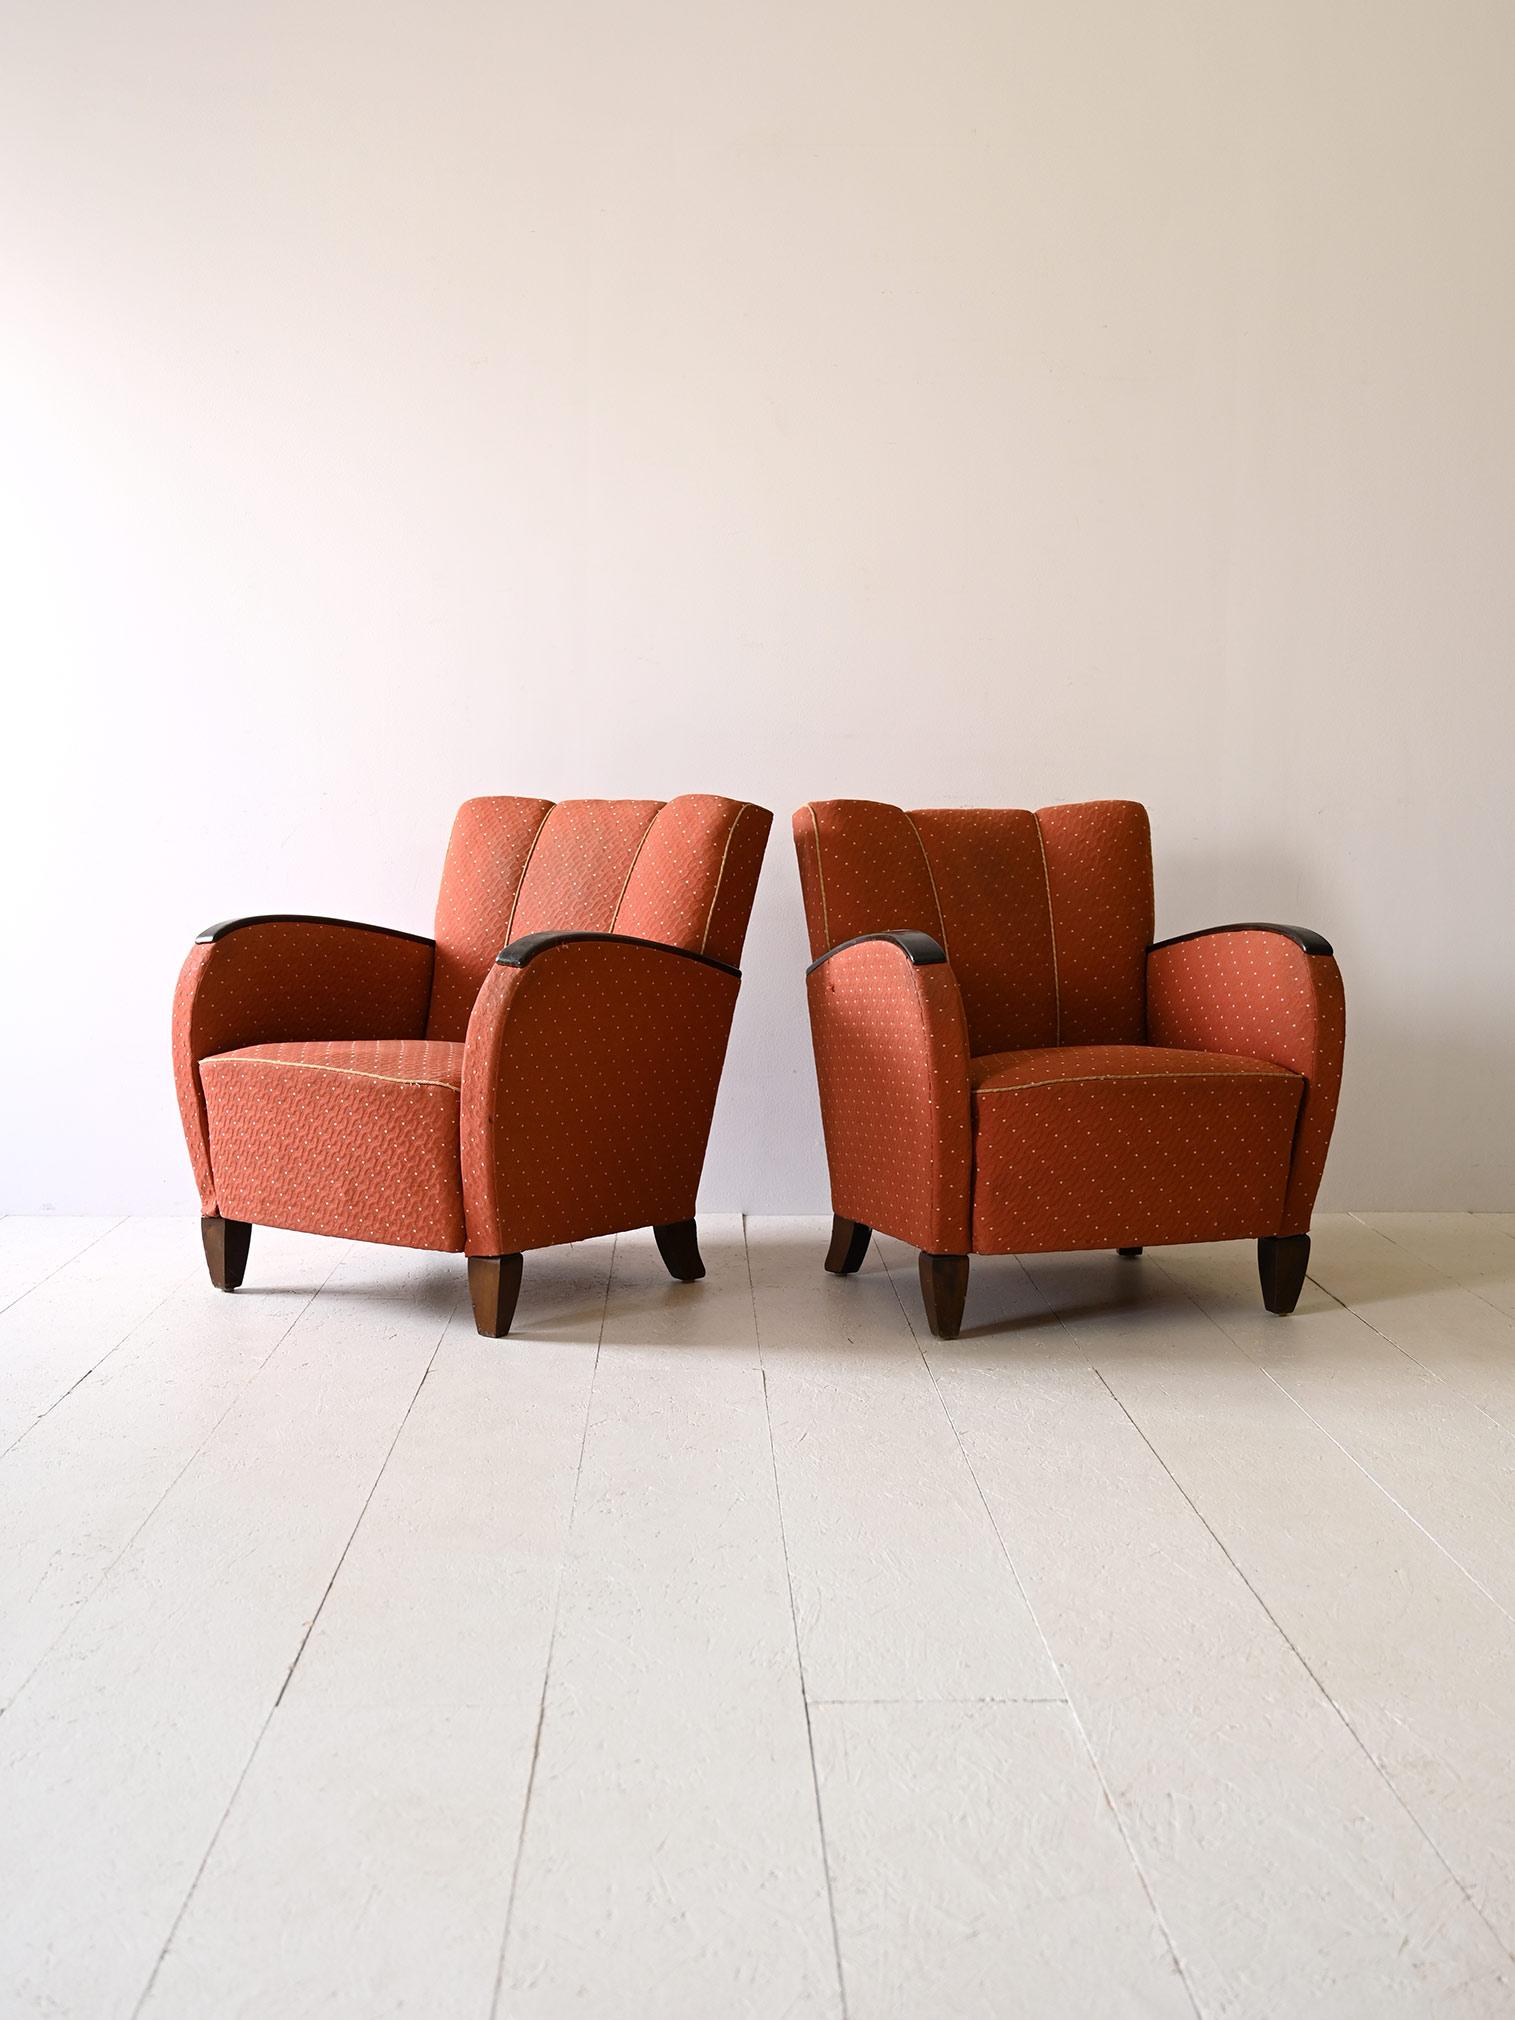 Paire de fauteuils déco originaux des années 1930.

Les fauteuils se distinguent par leurs accoudoirs en bois teinté, dont la teinte grise s'harmonise à merveille avec le tissu d'époque. Les surpiqûres rouges ajoutent une touche vivante et créent un